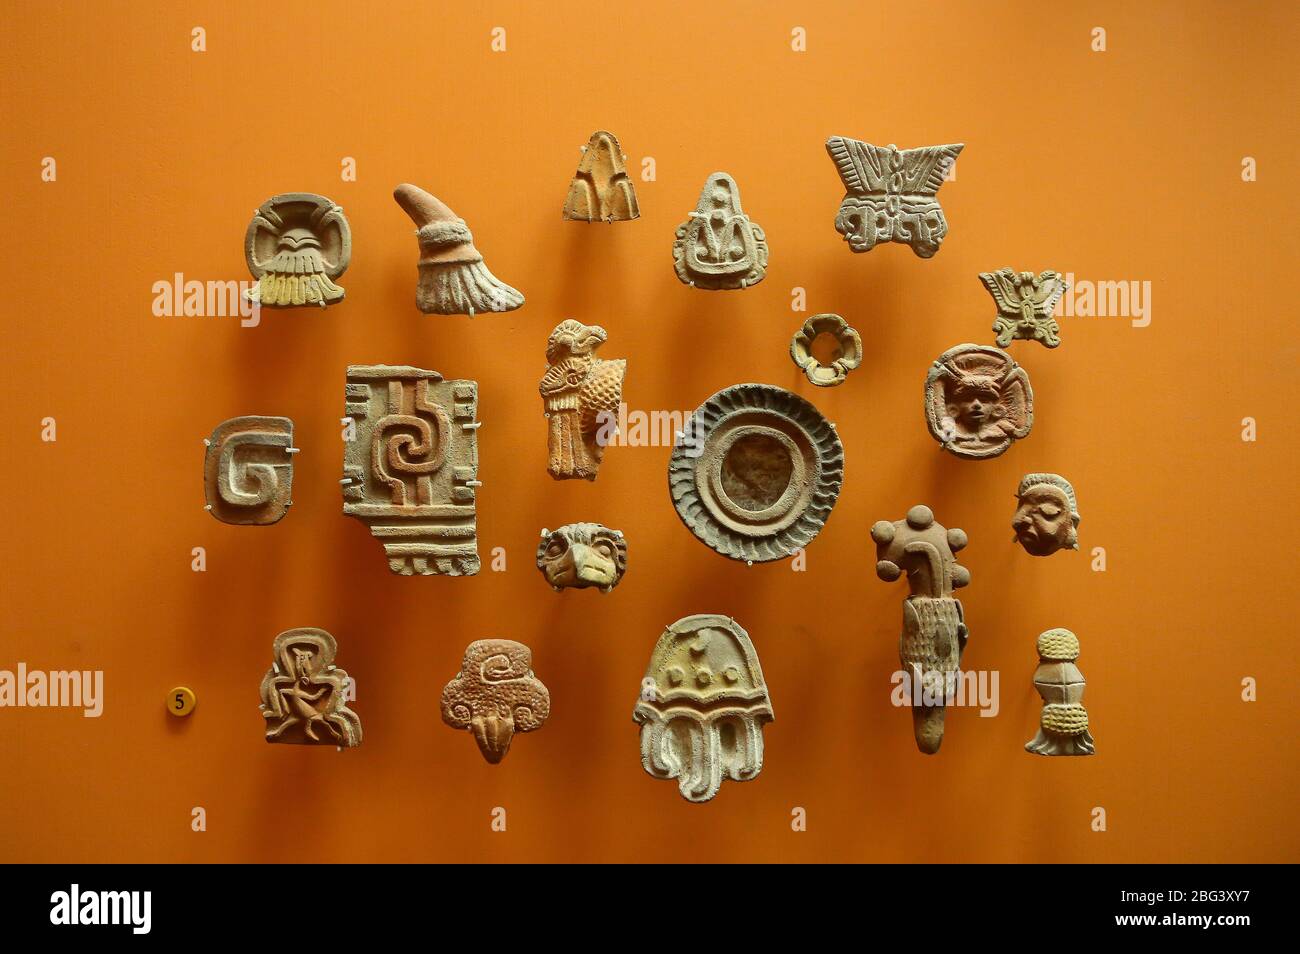 Cultura teotihuacana fotografías e imágenes de alta resolución - Alamy